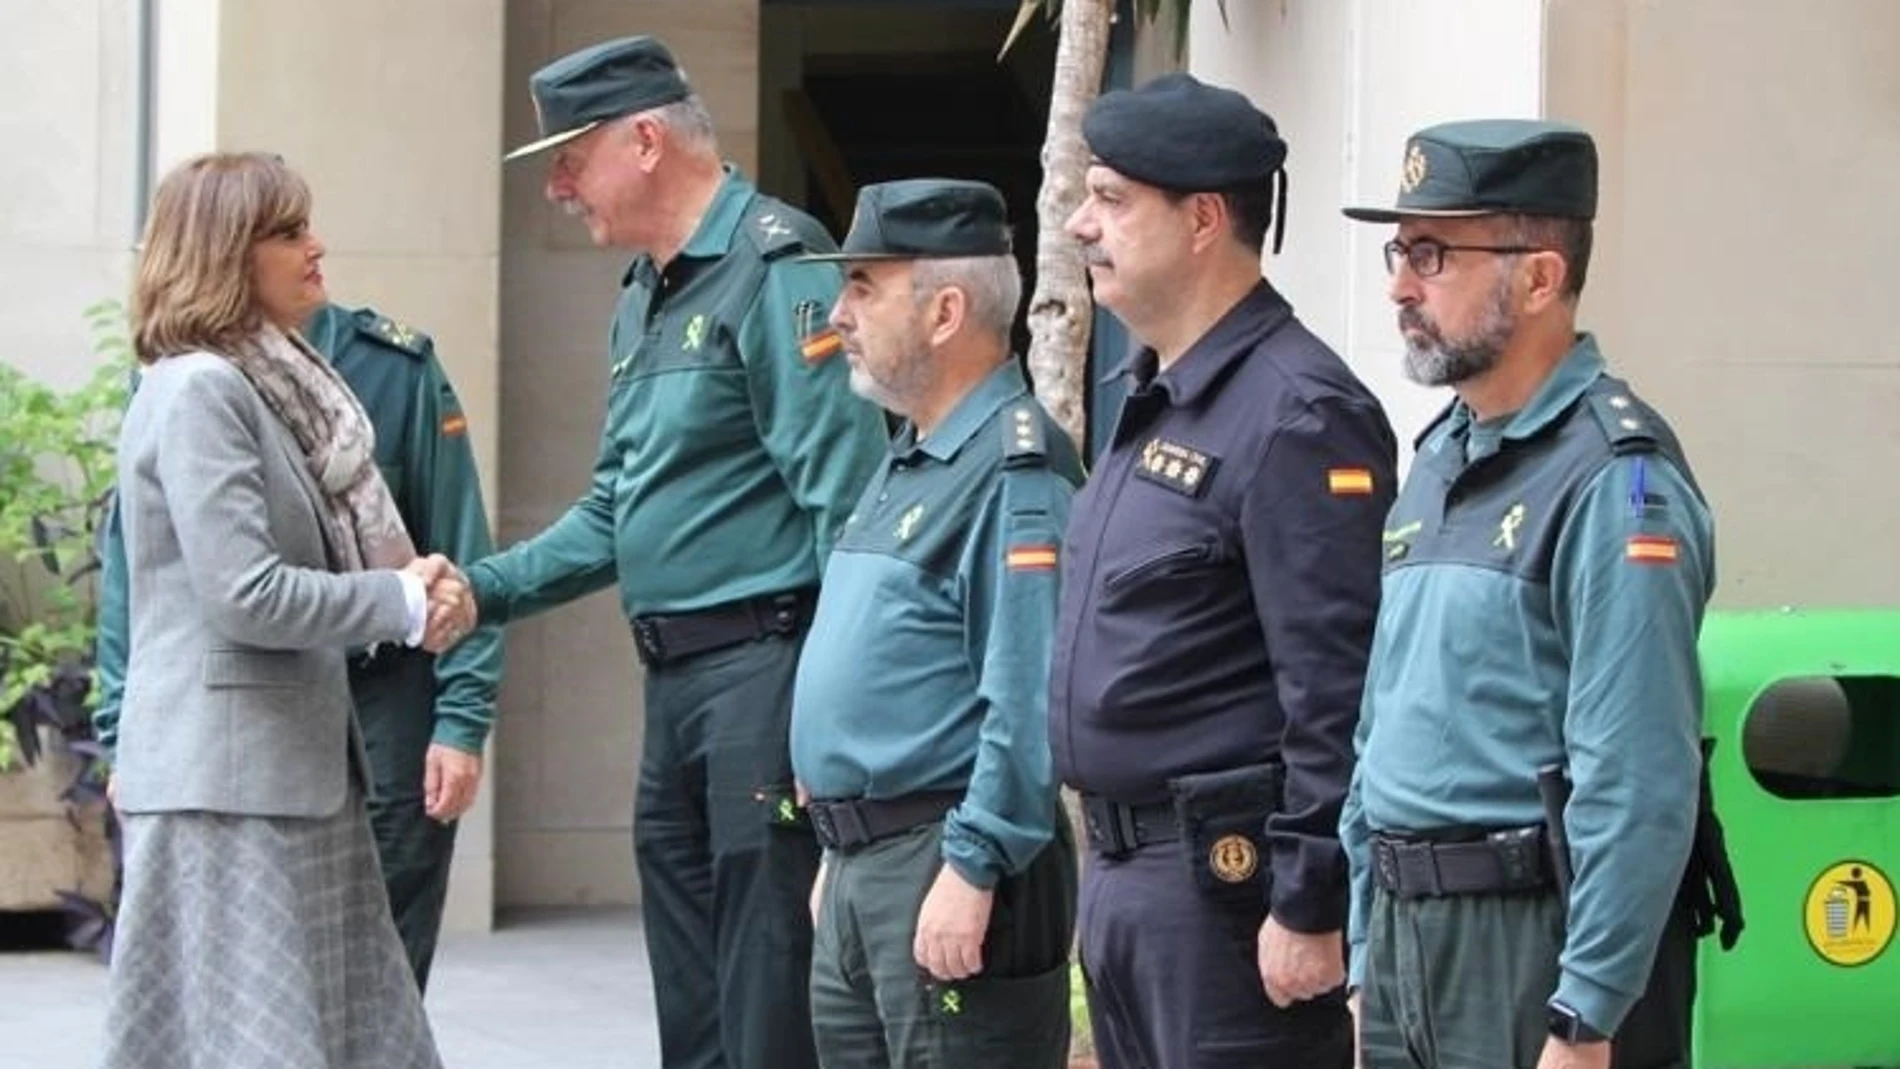 La secretaria de Estado de Seguridad visita a policías y guardias civiles en Barcelona